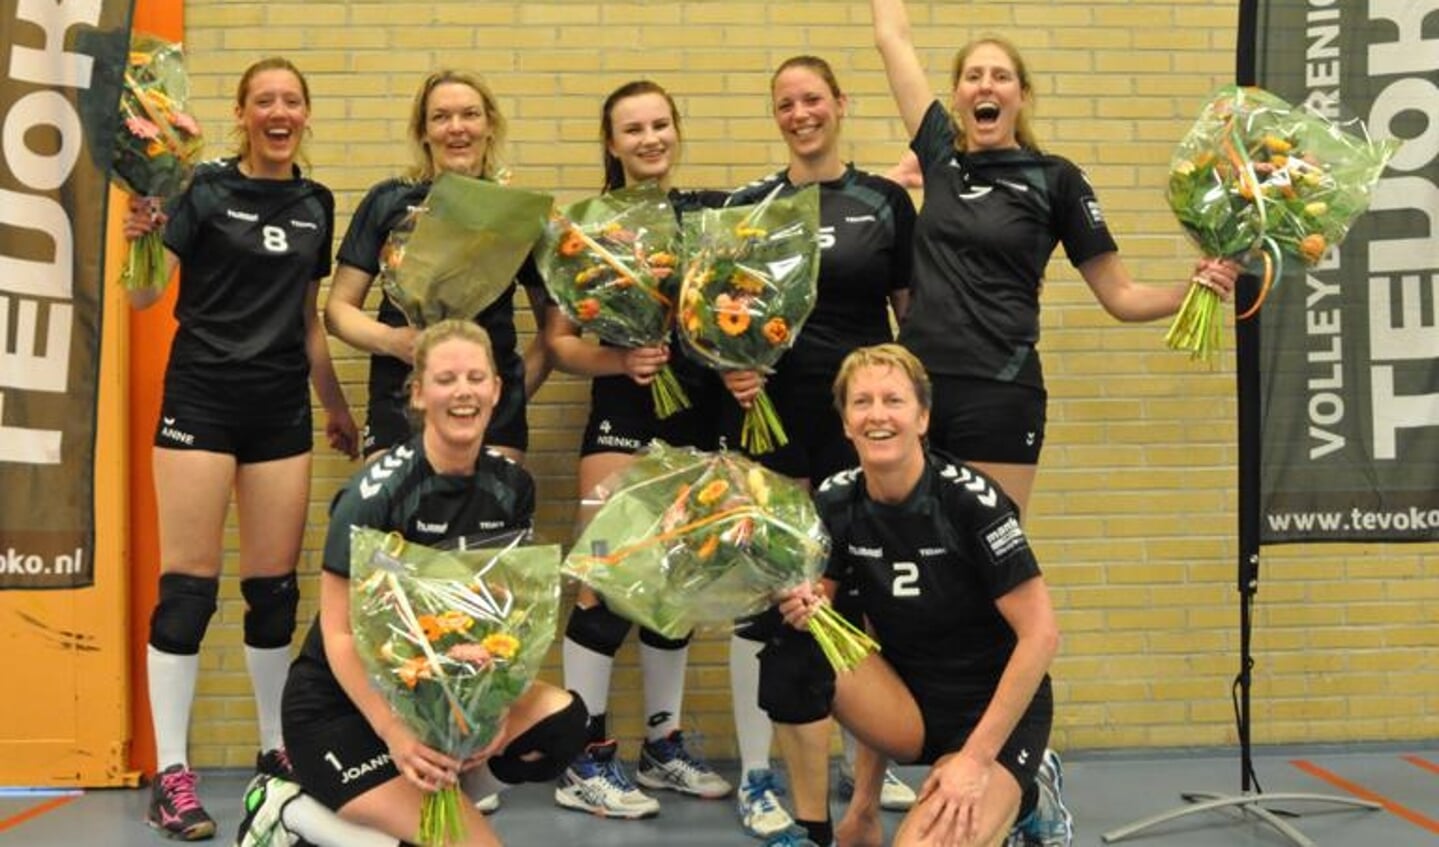 Het damesteam van Tevoko kampioen. (Foto: Willem Sangers)